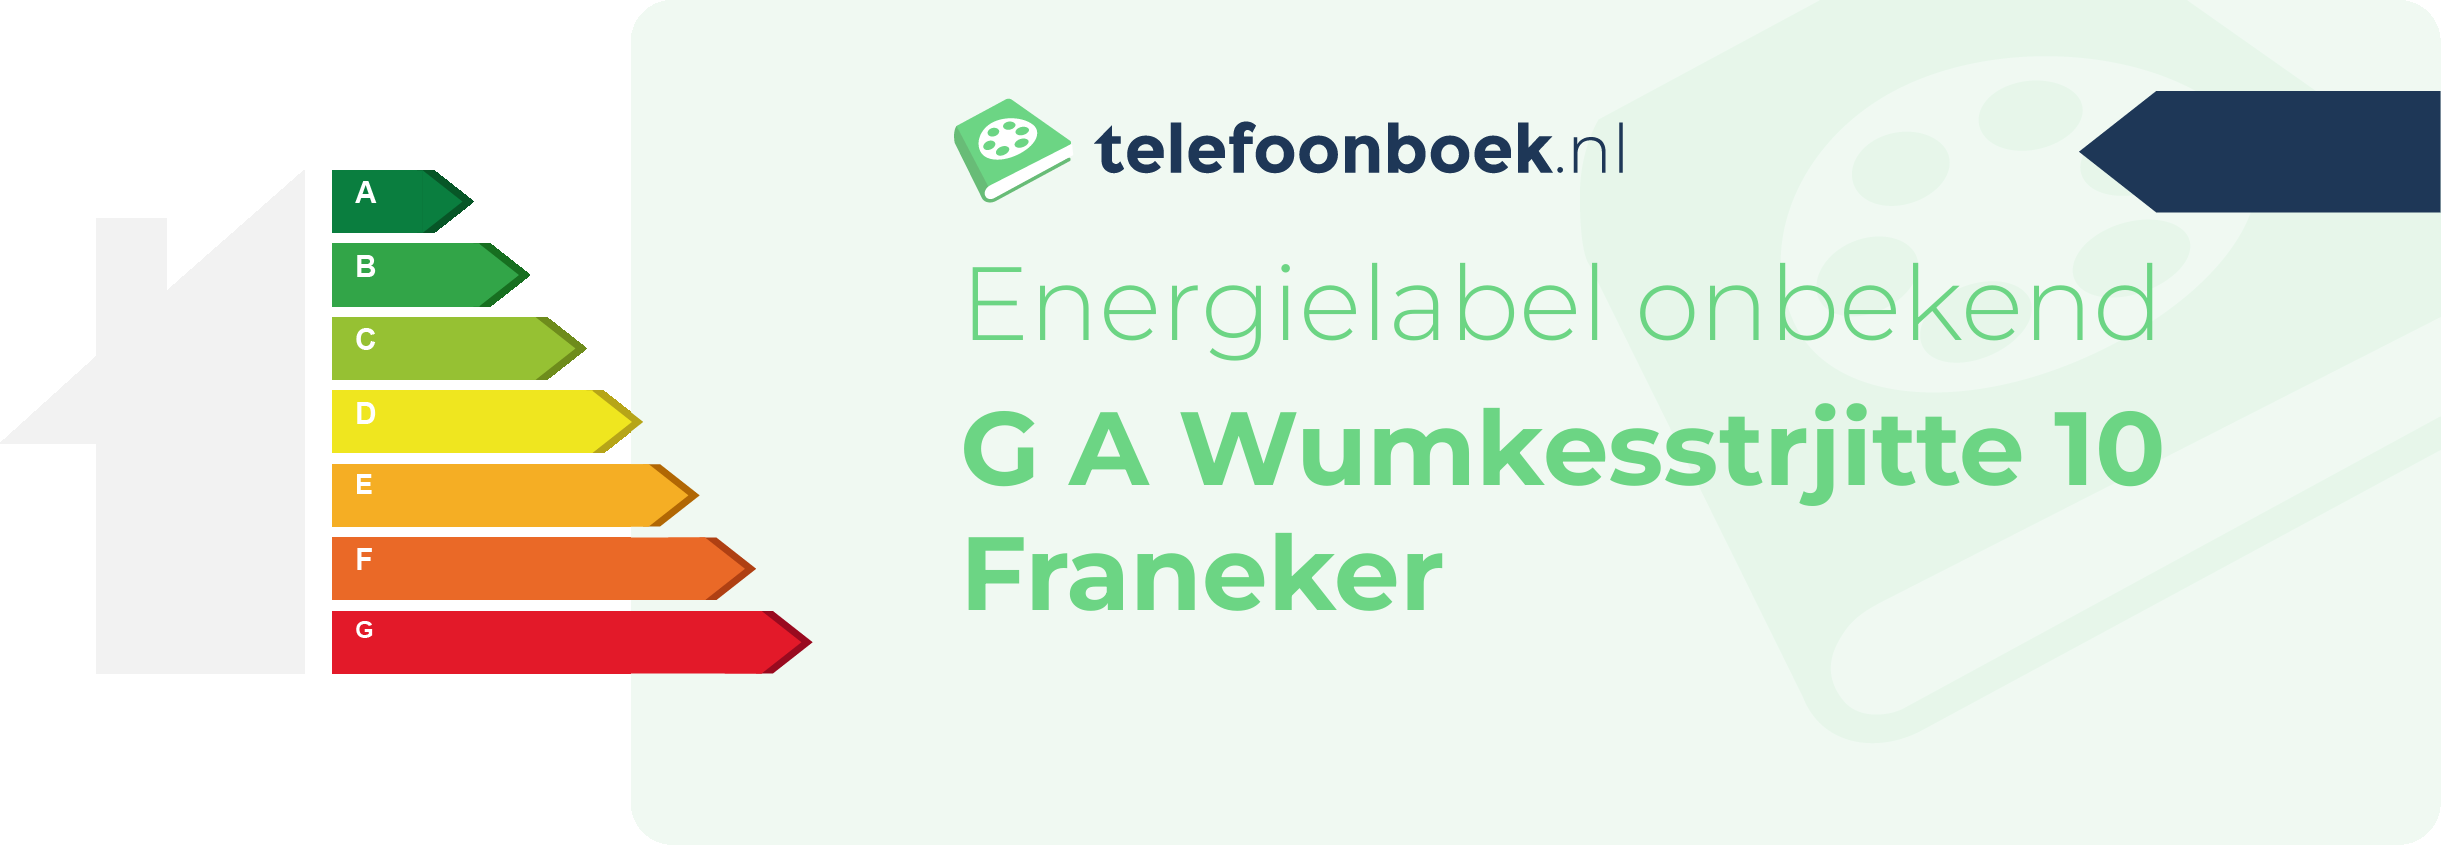 Energielabel G A Wumkesstrjitte 10 Franeker